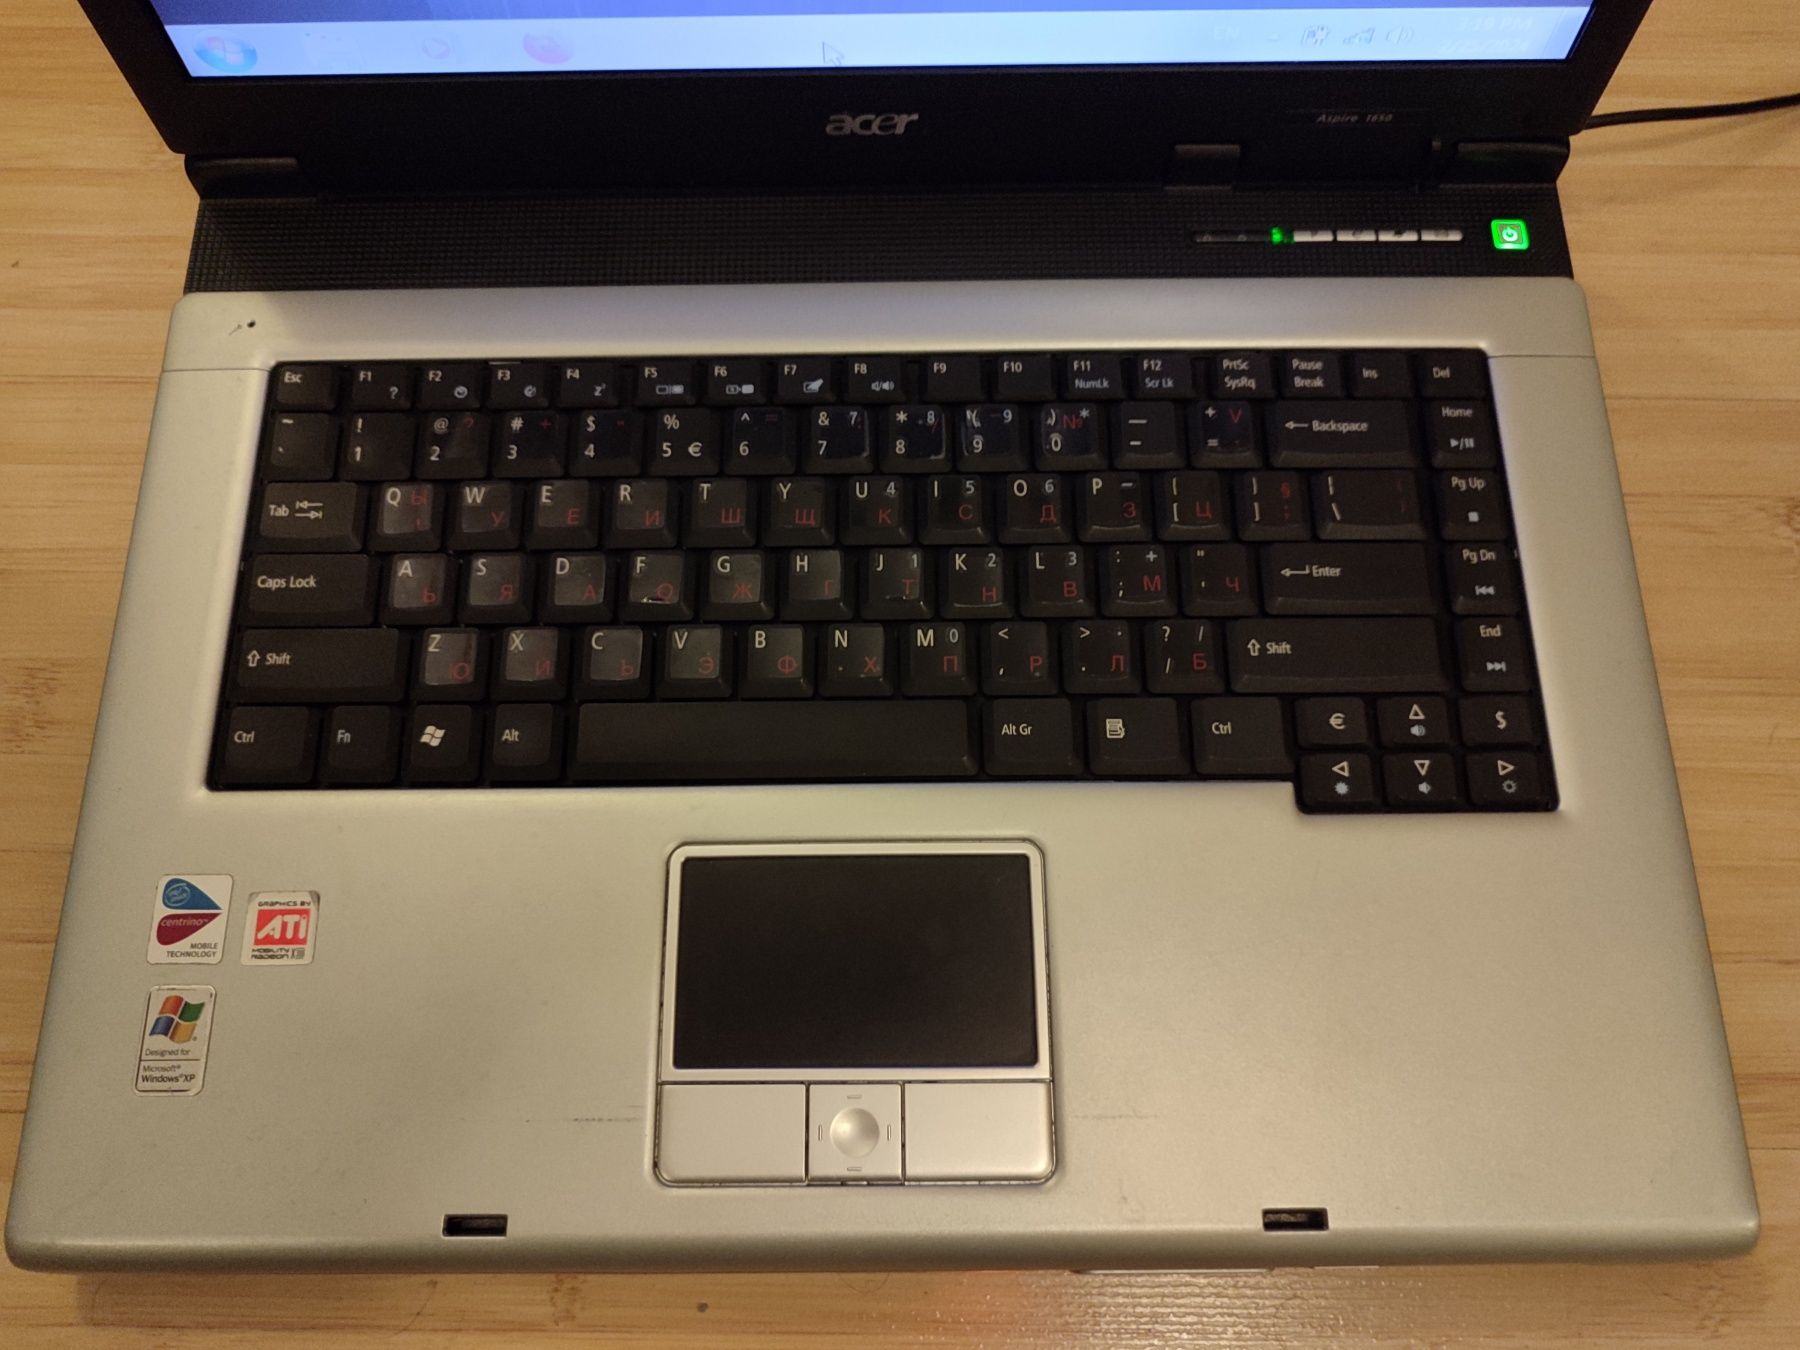 Лаптоп Acer Aspire 1650 със зарядно и мишка

процесор: Intel Pentium M